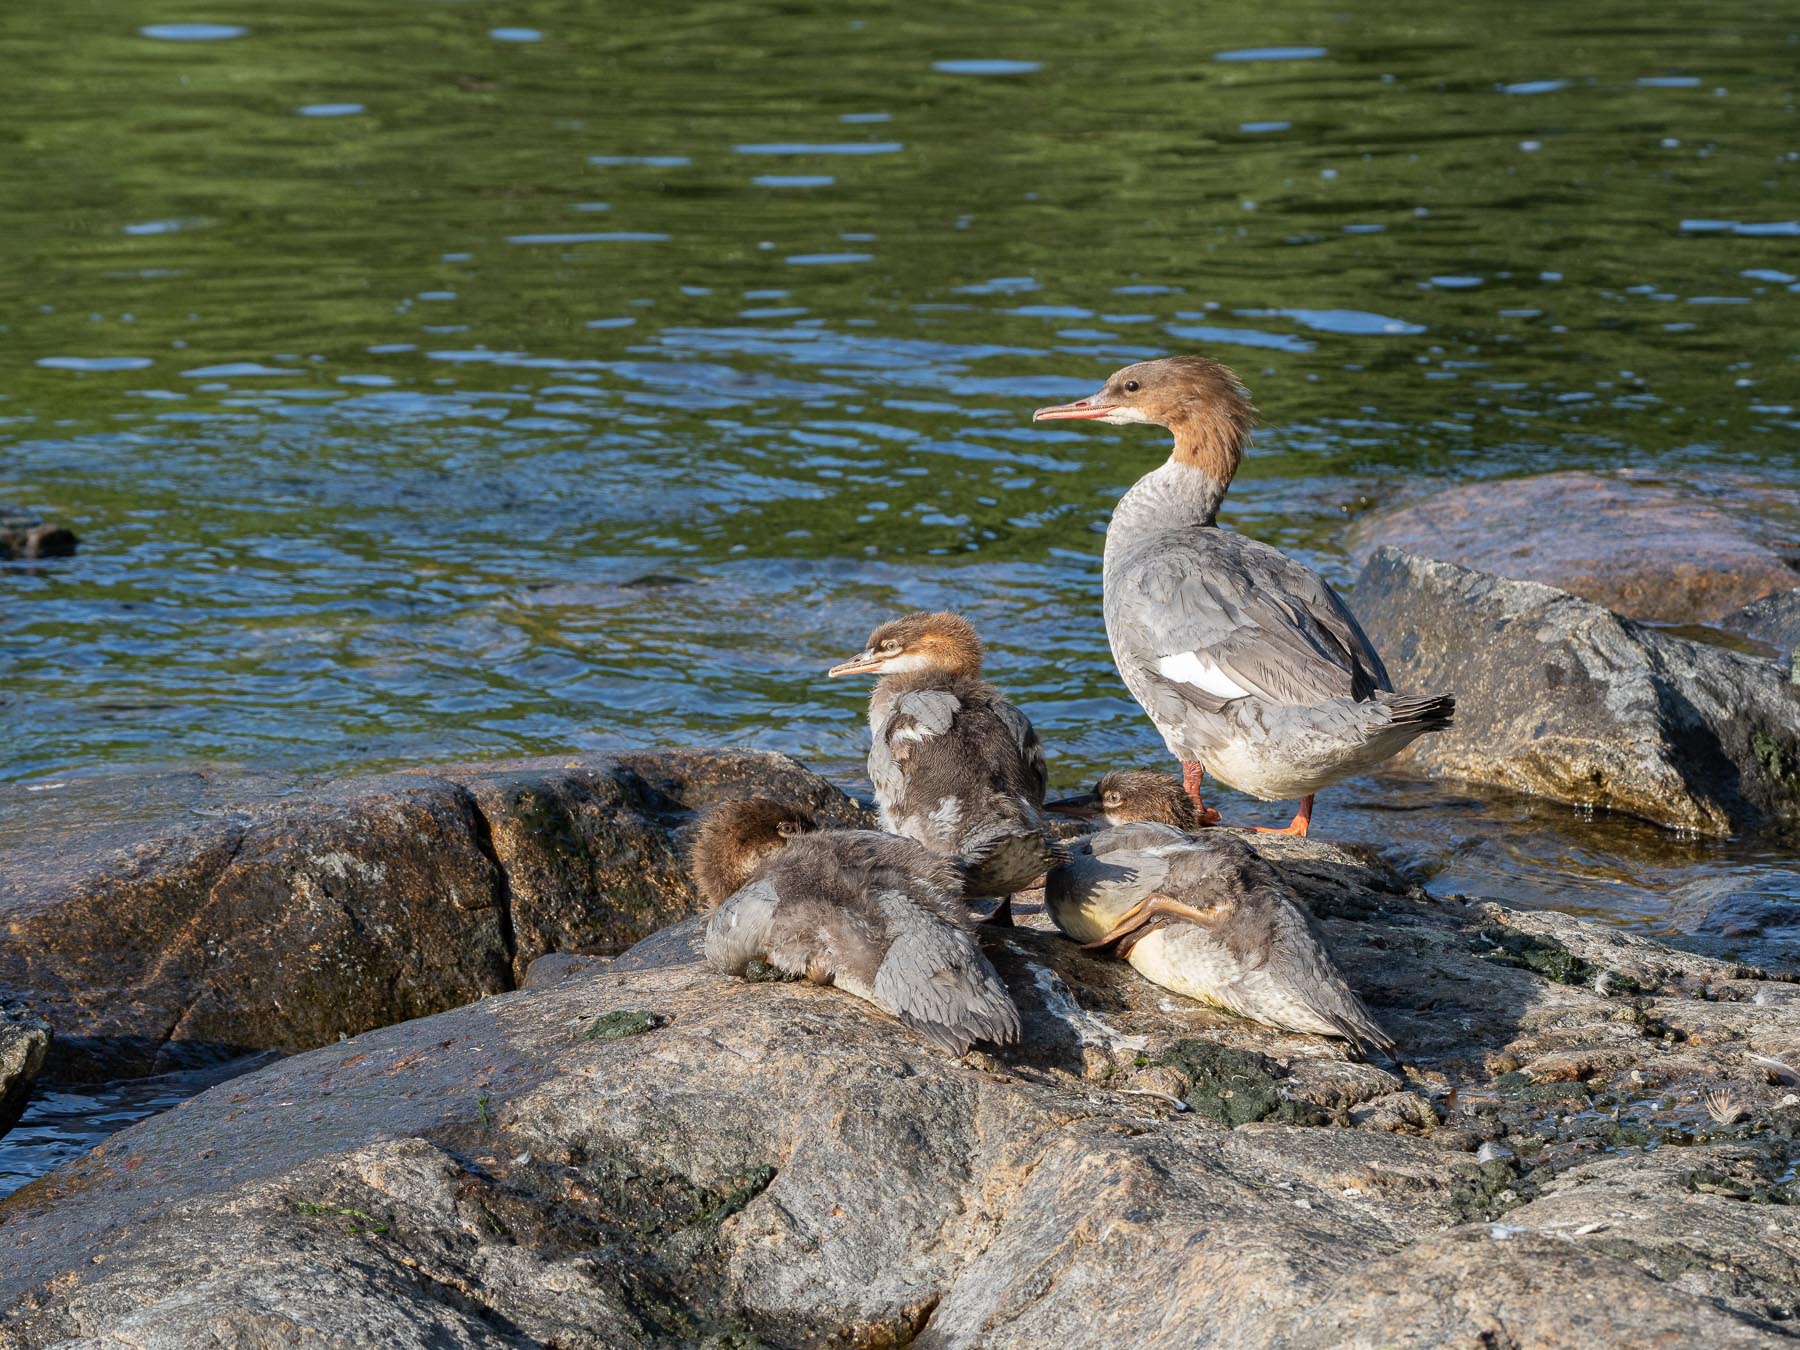 Самка с птенцами у берега острова Djurgården, Стокгольм, июнь 2021. Автор фото: Сутормина Марина